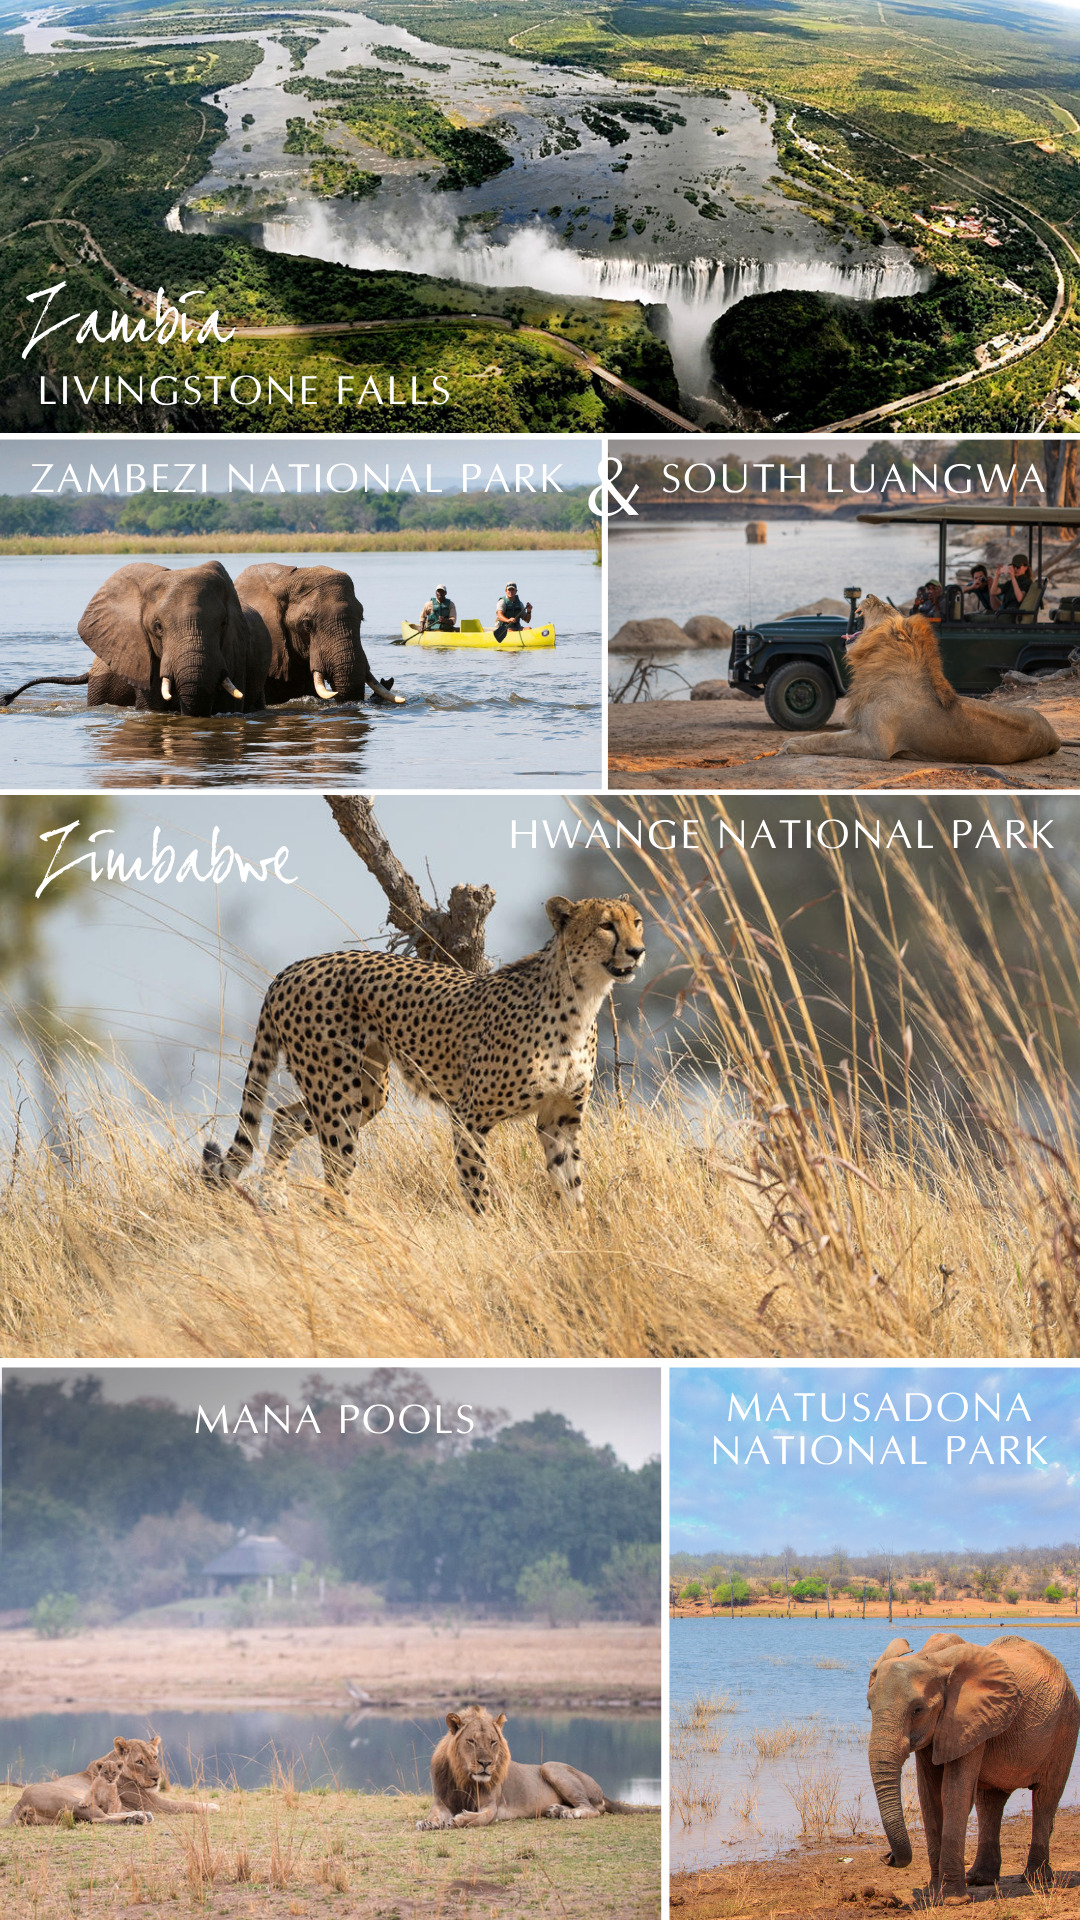 Multi-destination African safari_Southern Destinations_Into the Wild: Zambia - Livingstone Falls, Zambezi National Park, South Luangwa / Zimbabwe: Hwange National Park, Mana Pools, Matusadona National Park (Lake Kariba)